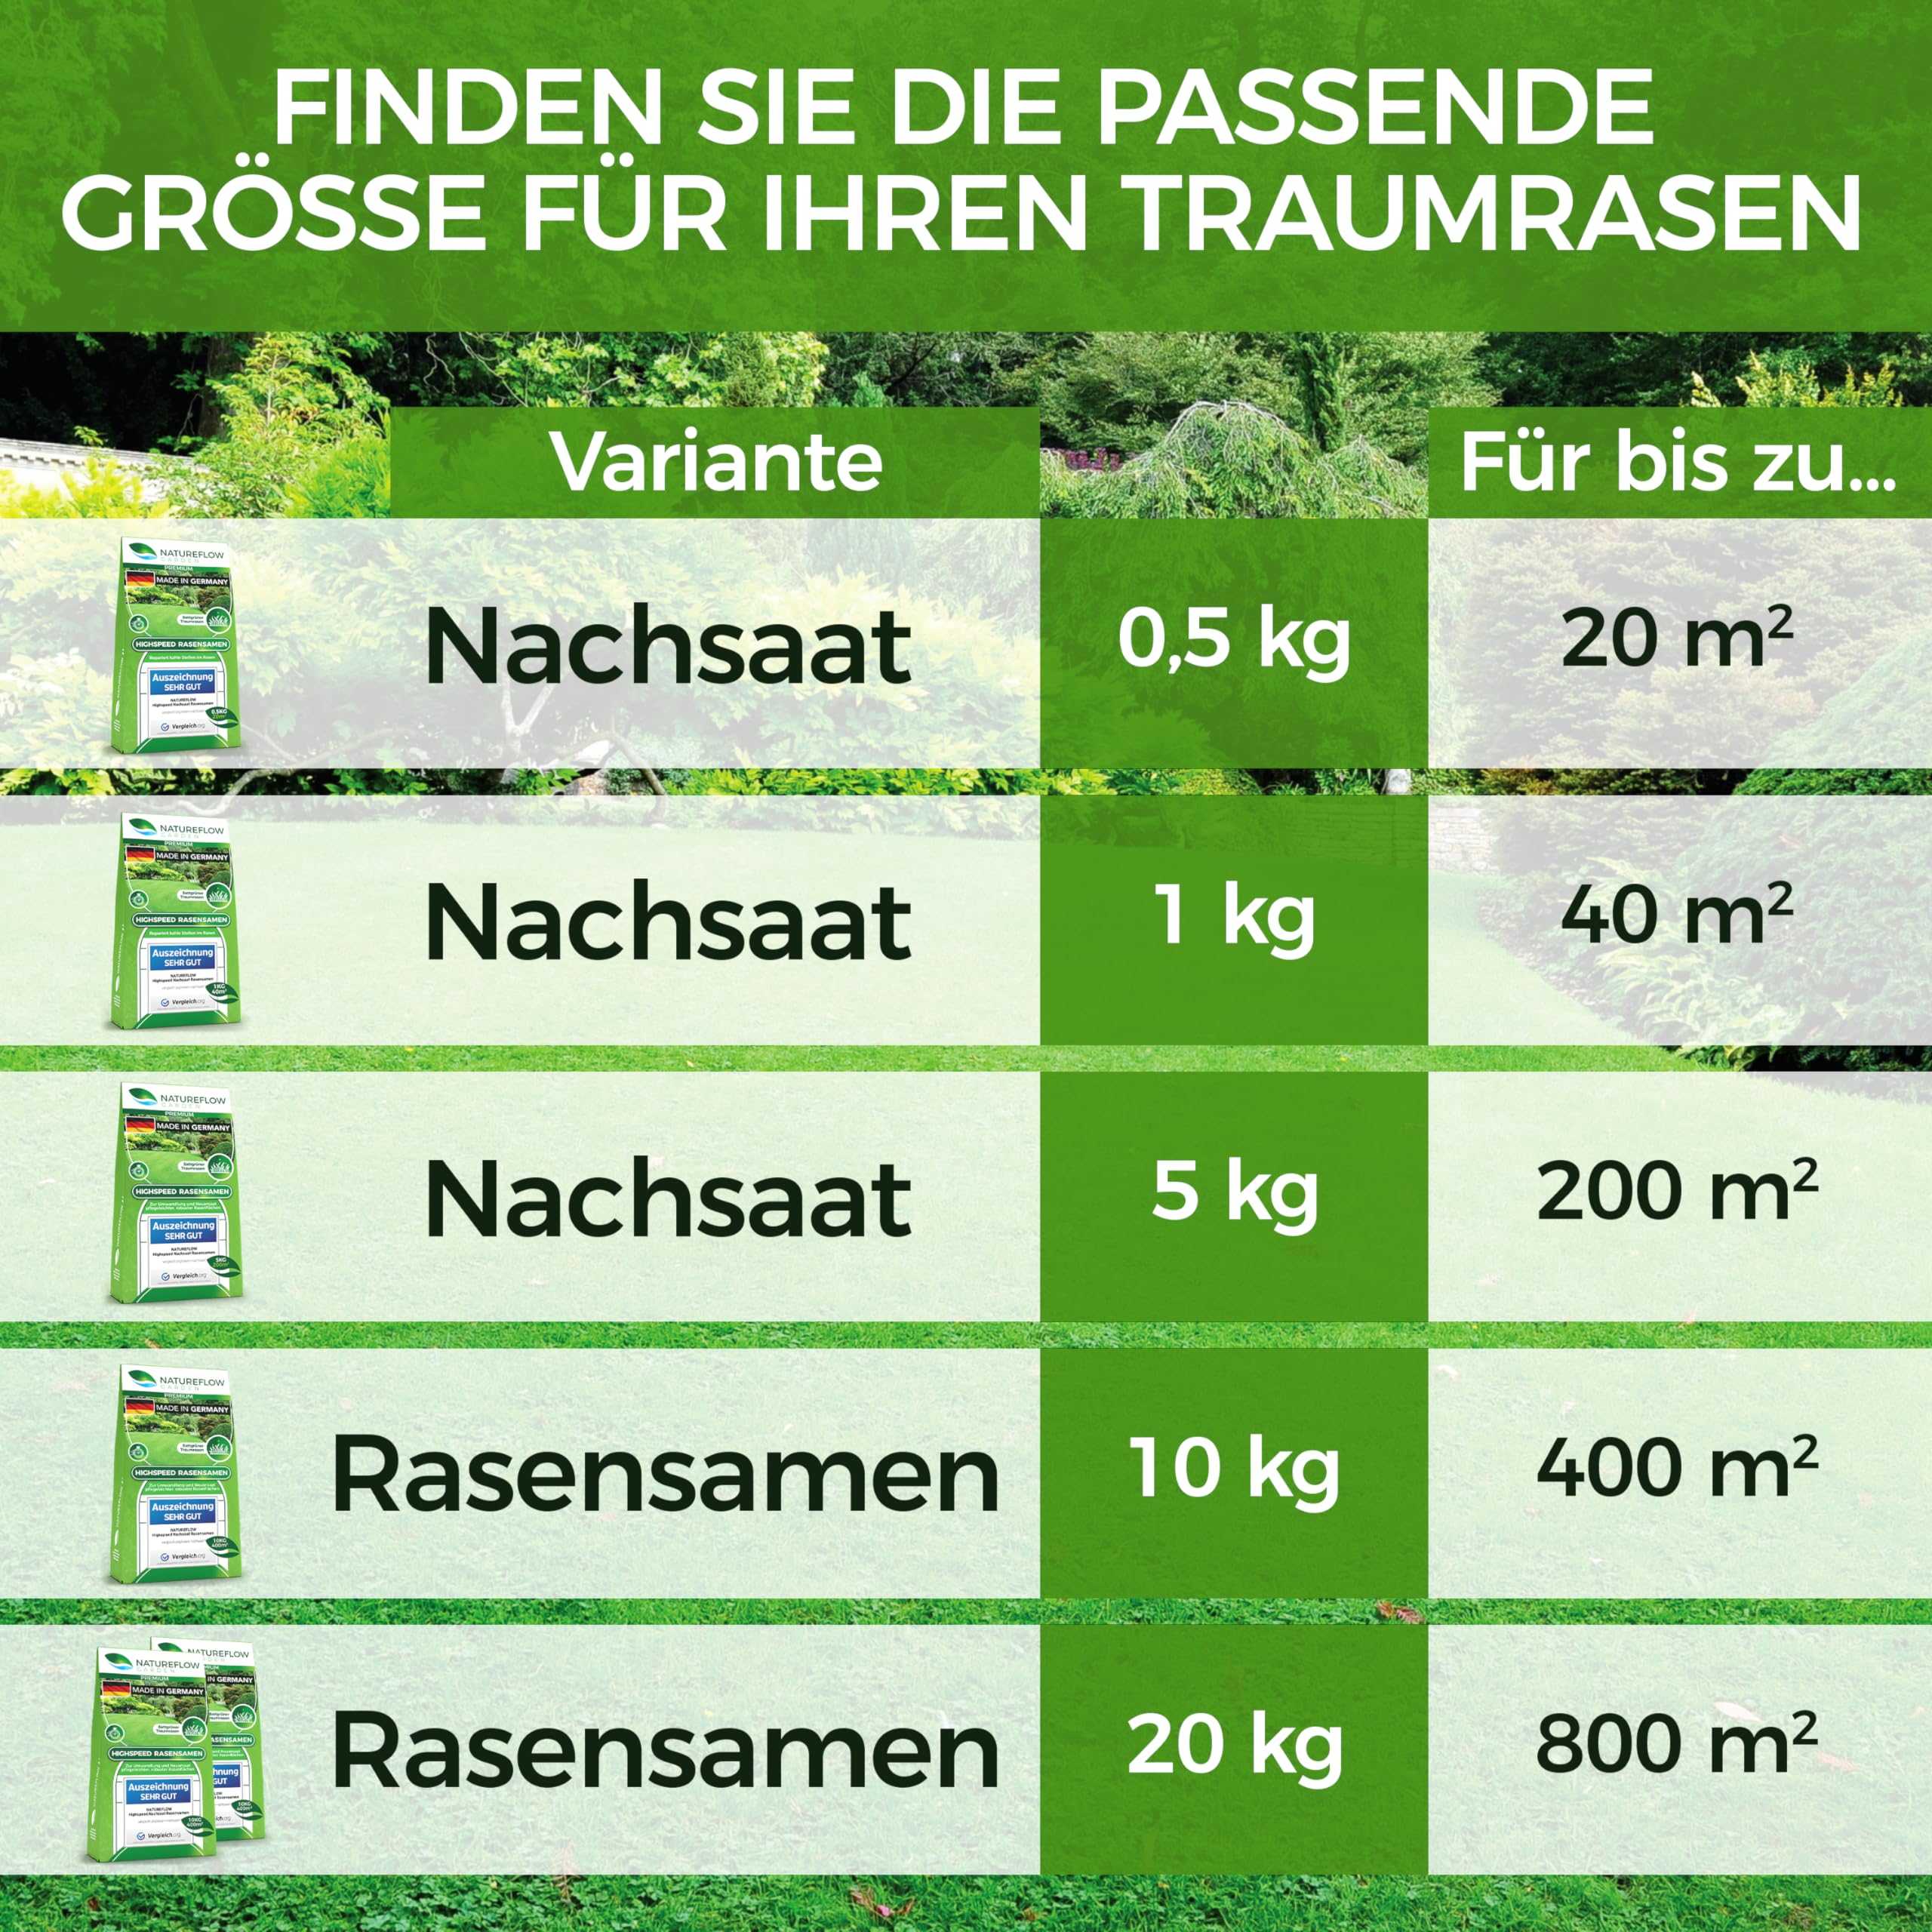 Rasensamen schnellkeimend 10kg - SEHR GUT getestet - Schnell wachsender Rasen Made in Germany - Premium Grassamen schnellkeimend - Rasensaat für sattgrünen, unkrautfreien Traumrasen